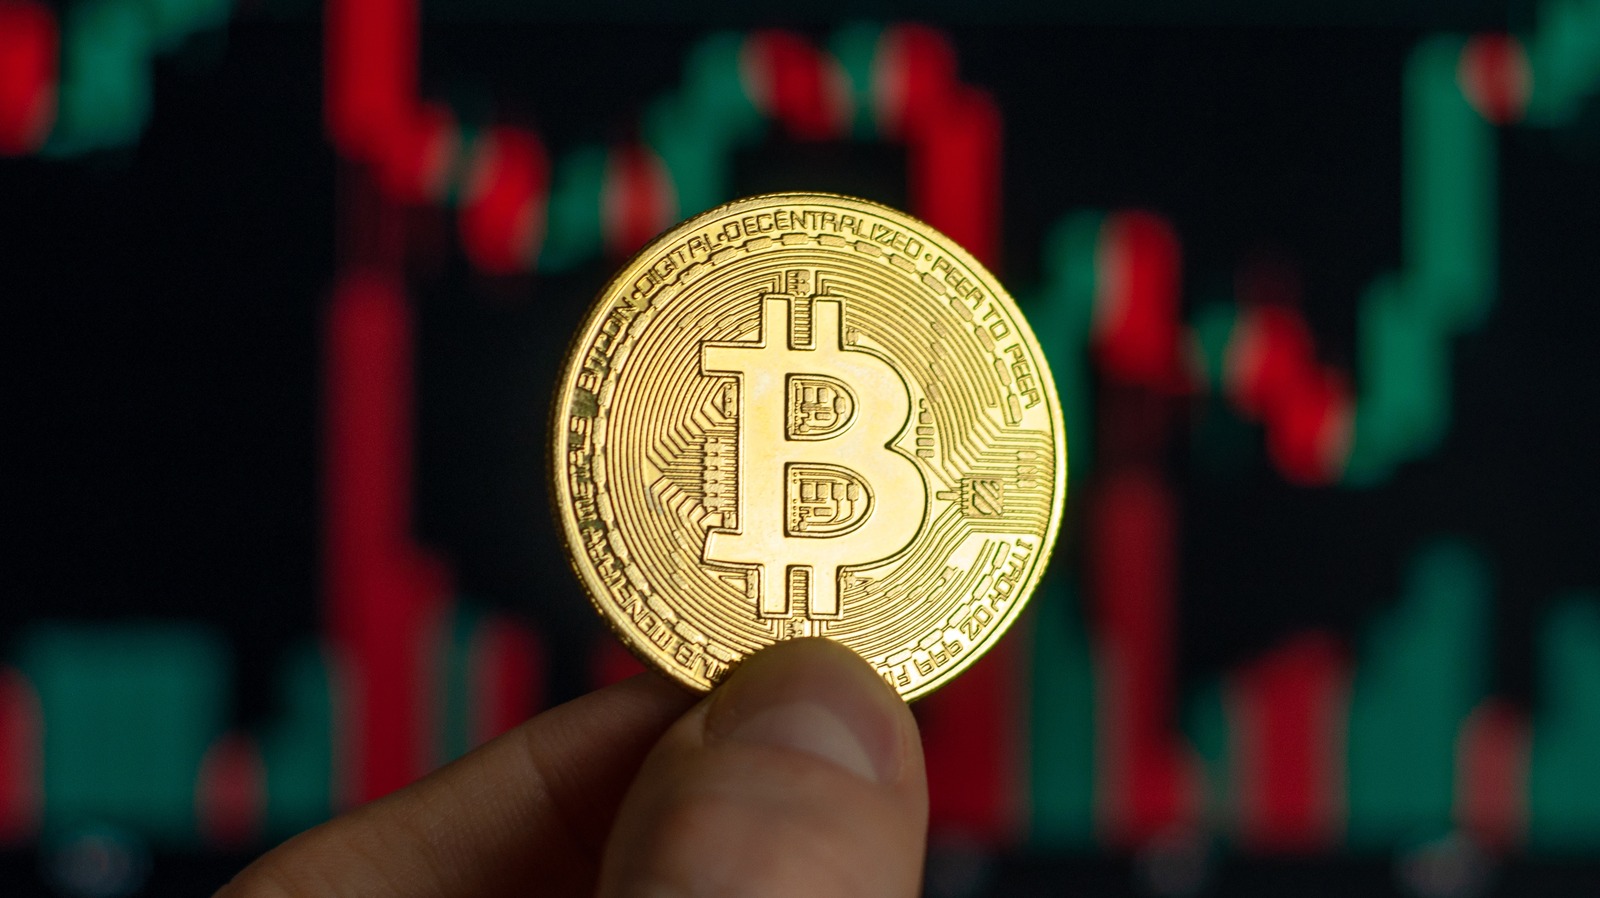 Por que um dos países mais pobres do mundo fez do Bitcoin uma moeda oficial